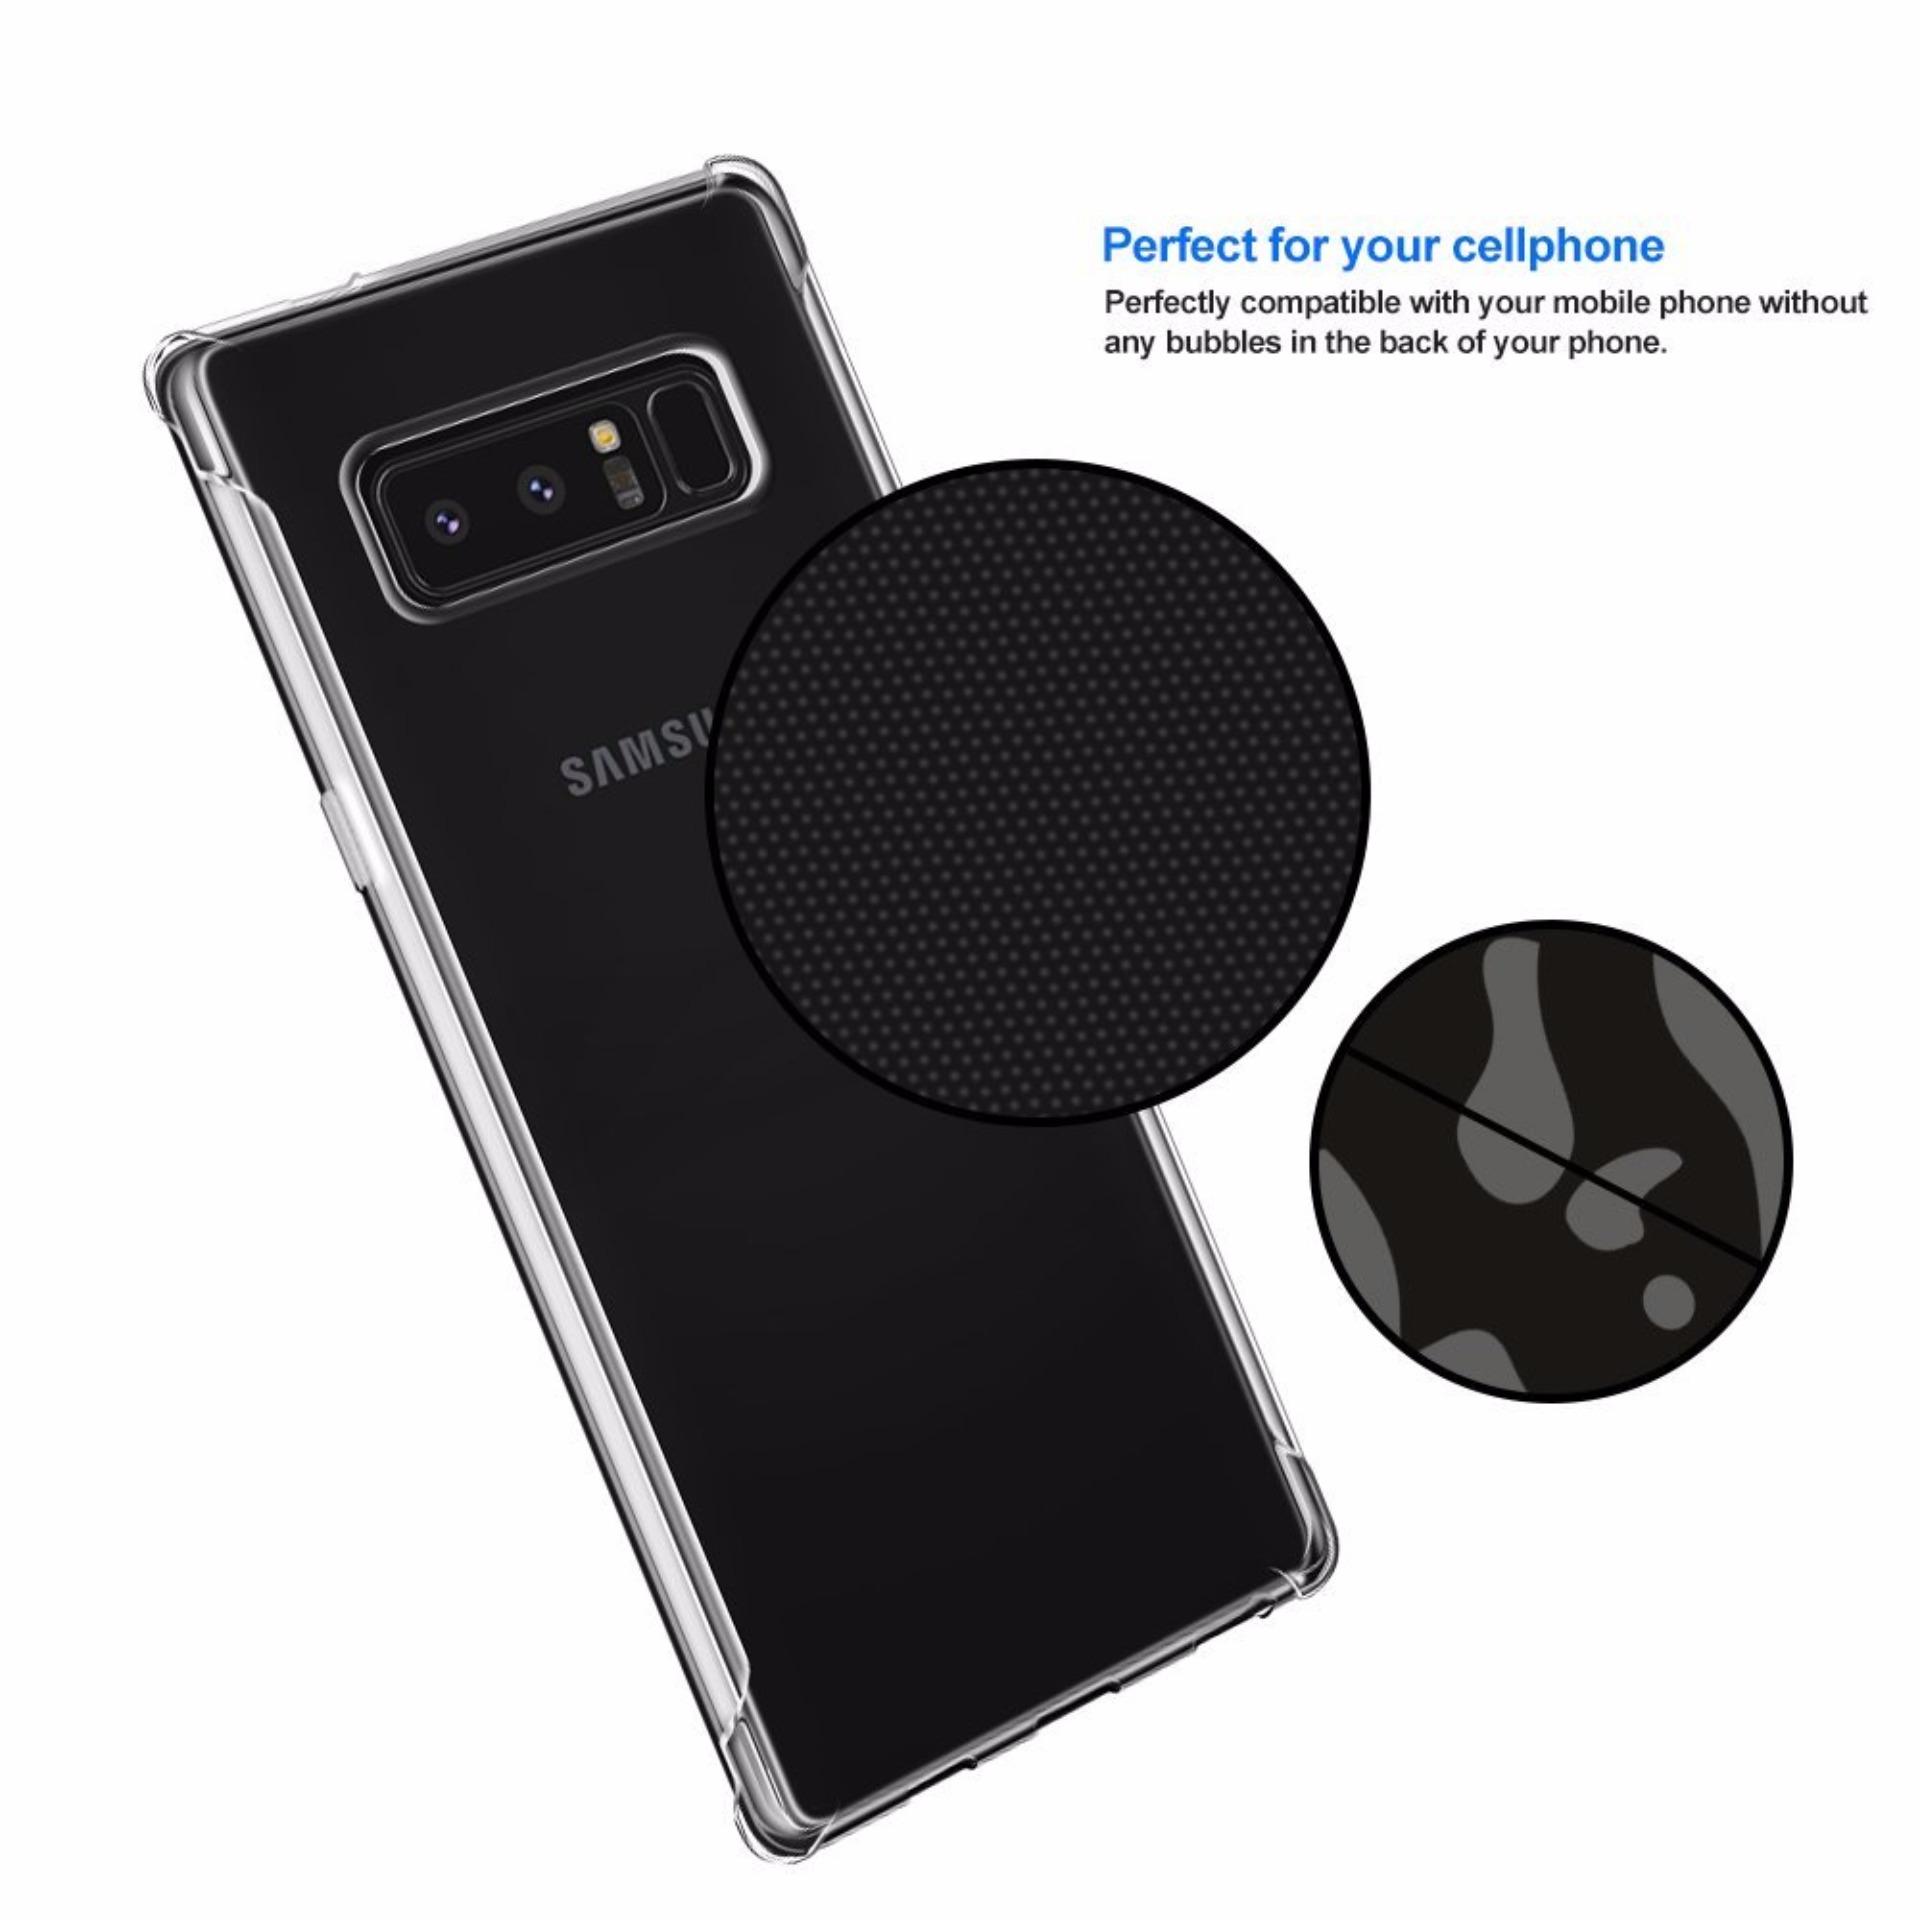 1x Samsung Galaxy Note 8 Air-Cushion TPU Clear